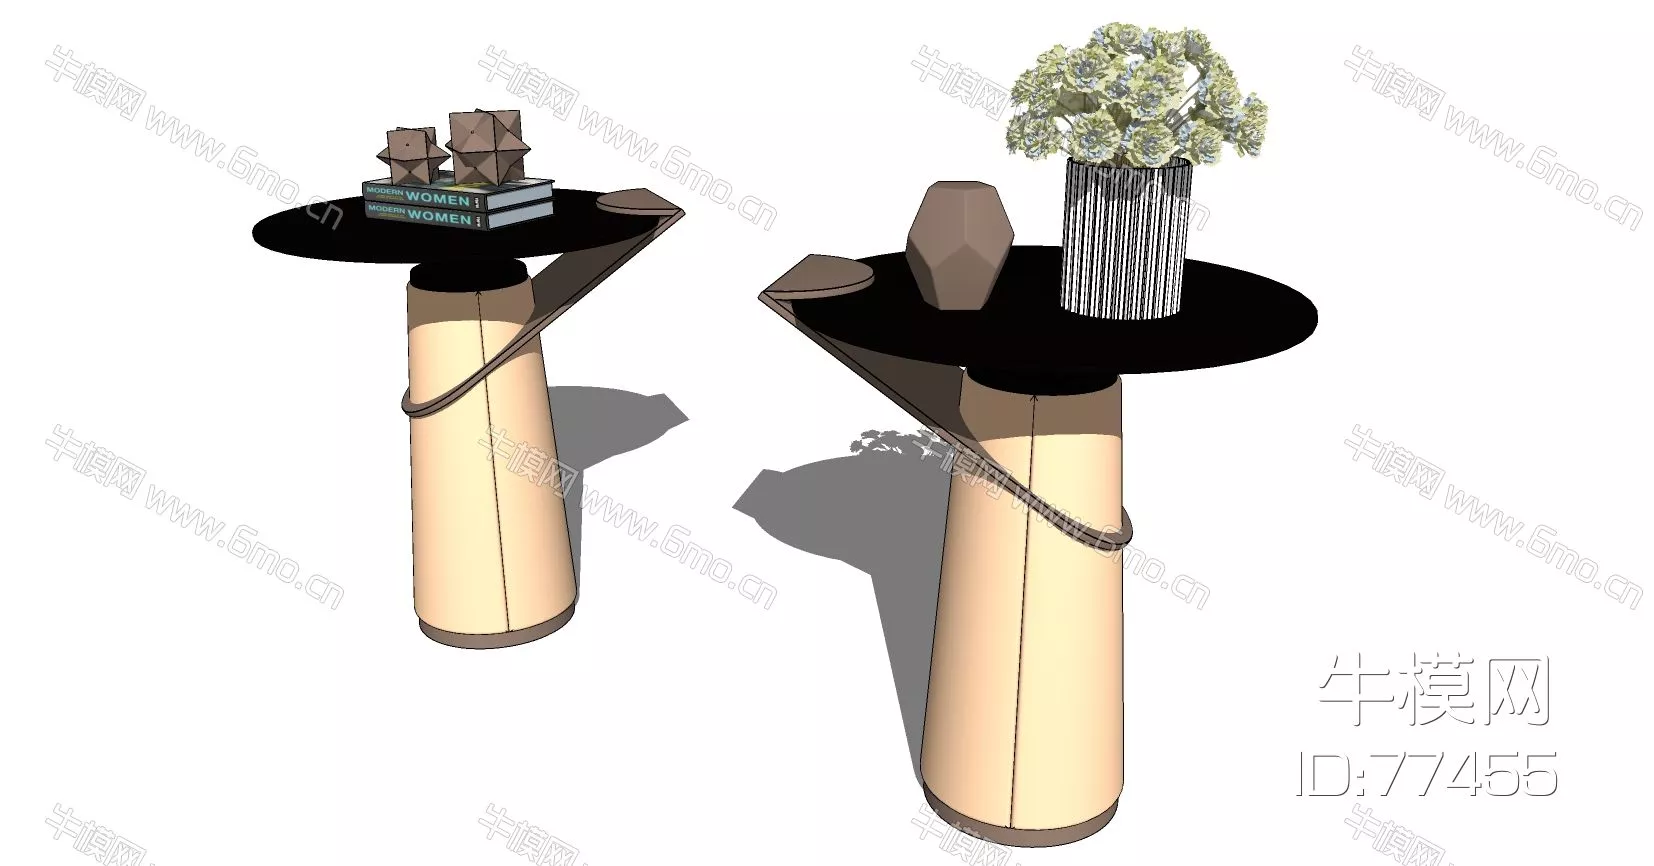 MODERN SIDE TABLE - SKETCHUP 3D MODEL - ENSCAPE - 77455